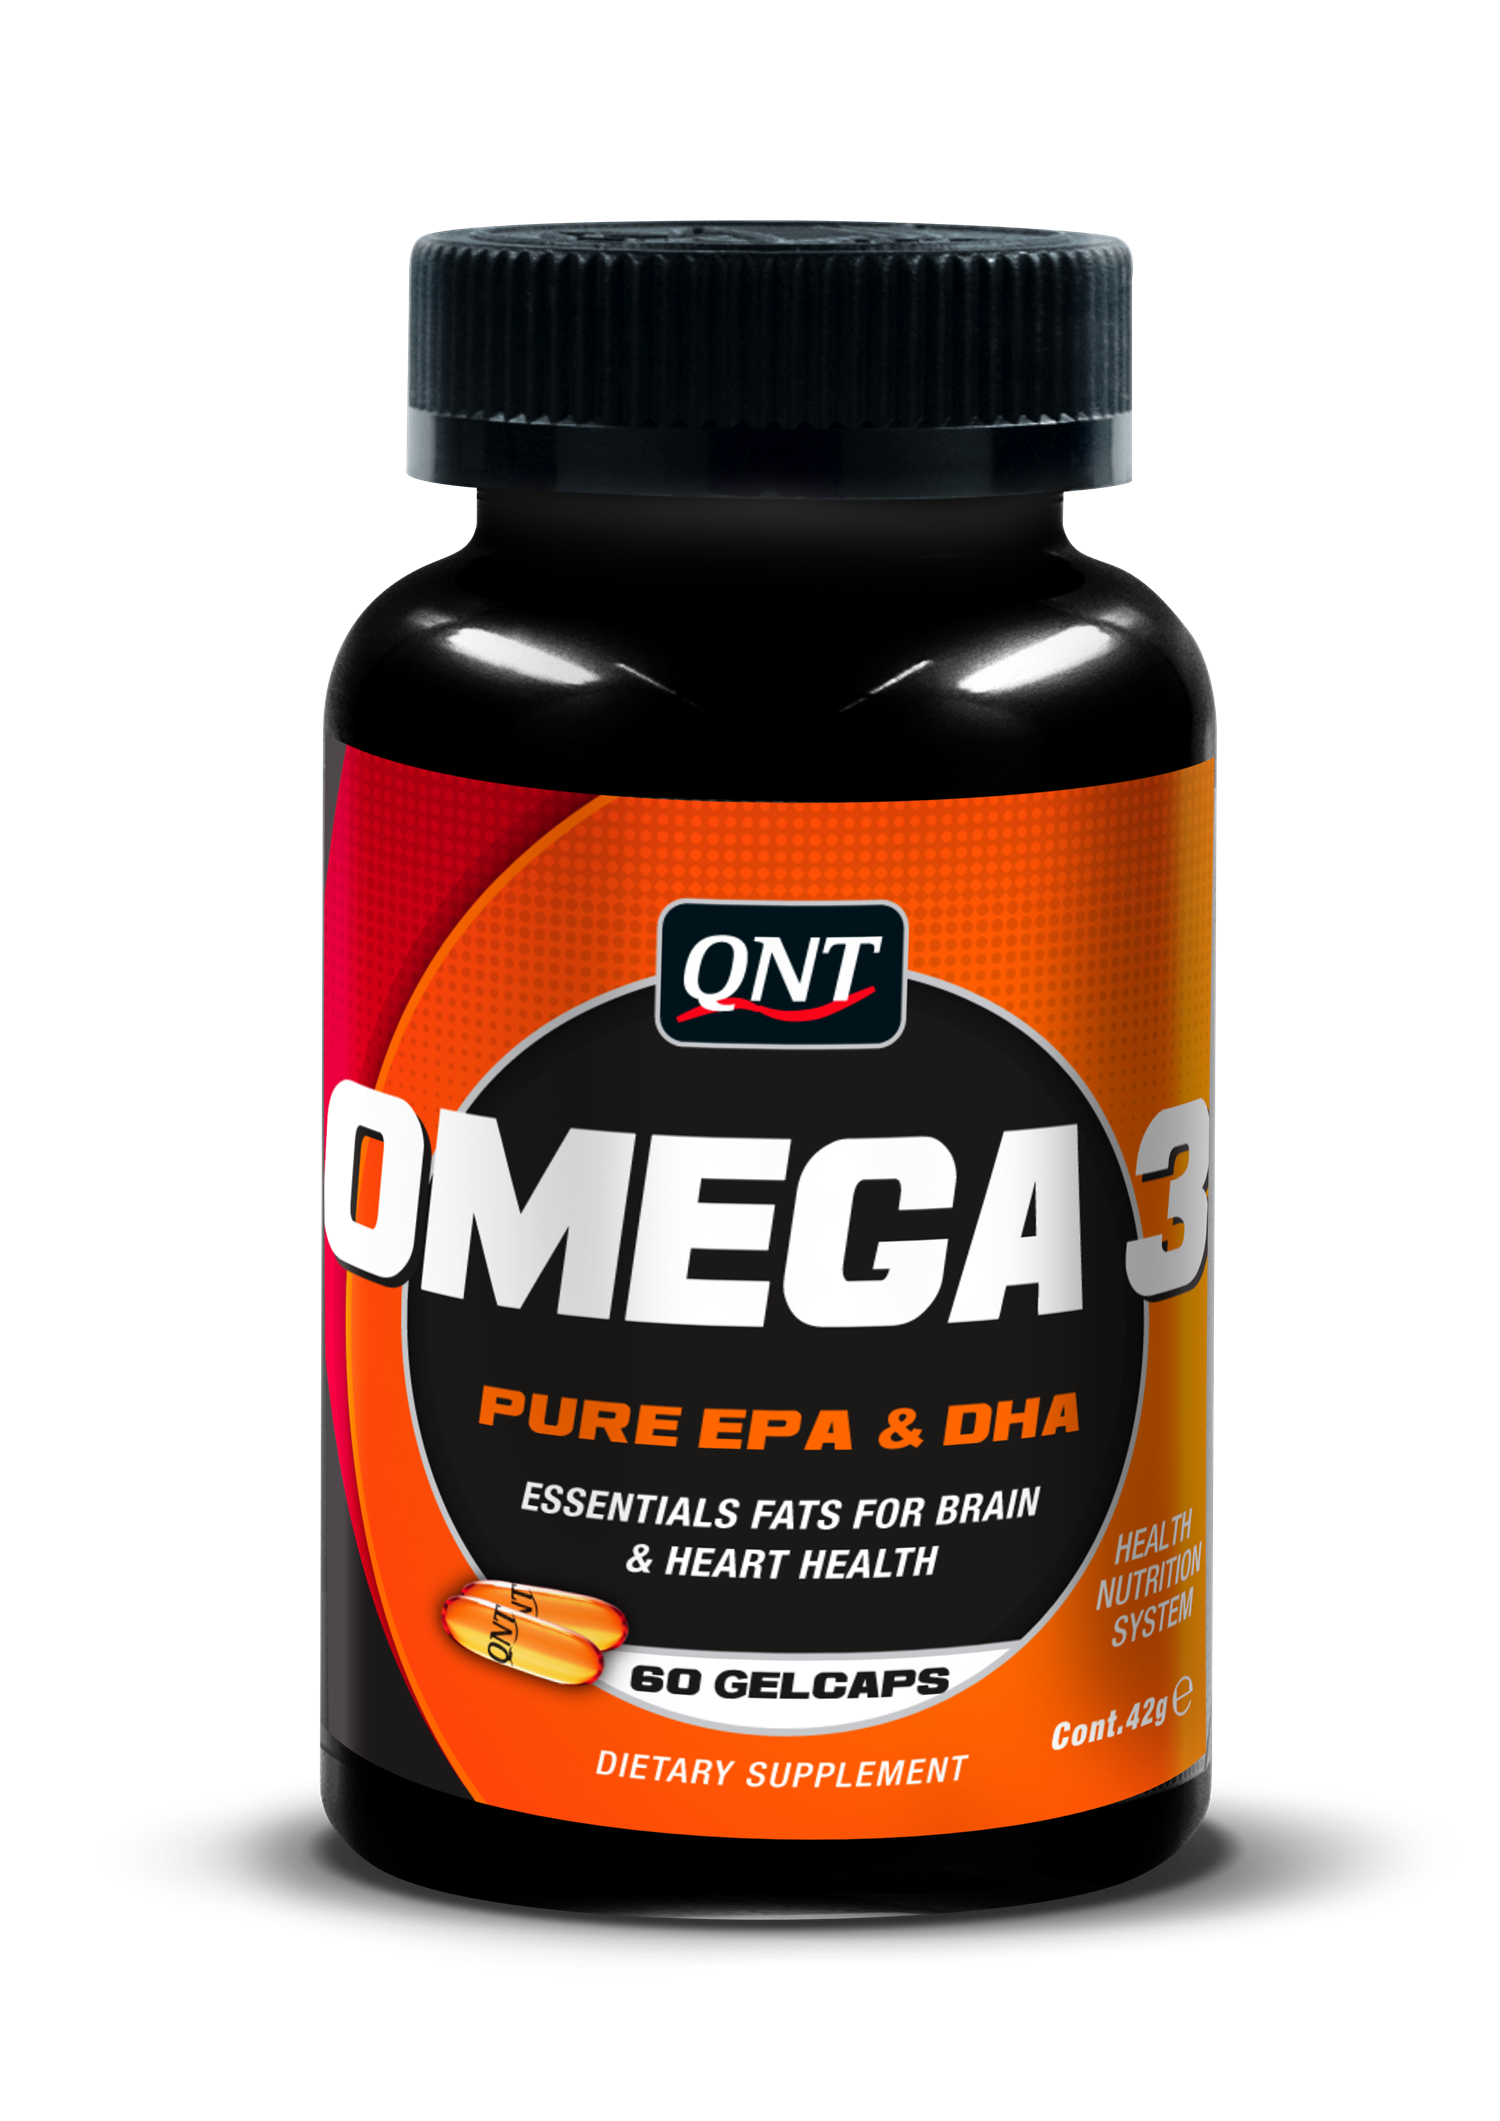 Qnt Omega 3 (1000mg) - 60 gelcaps